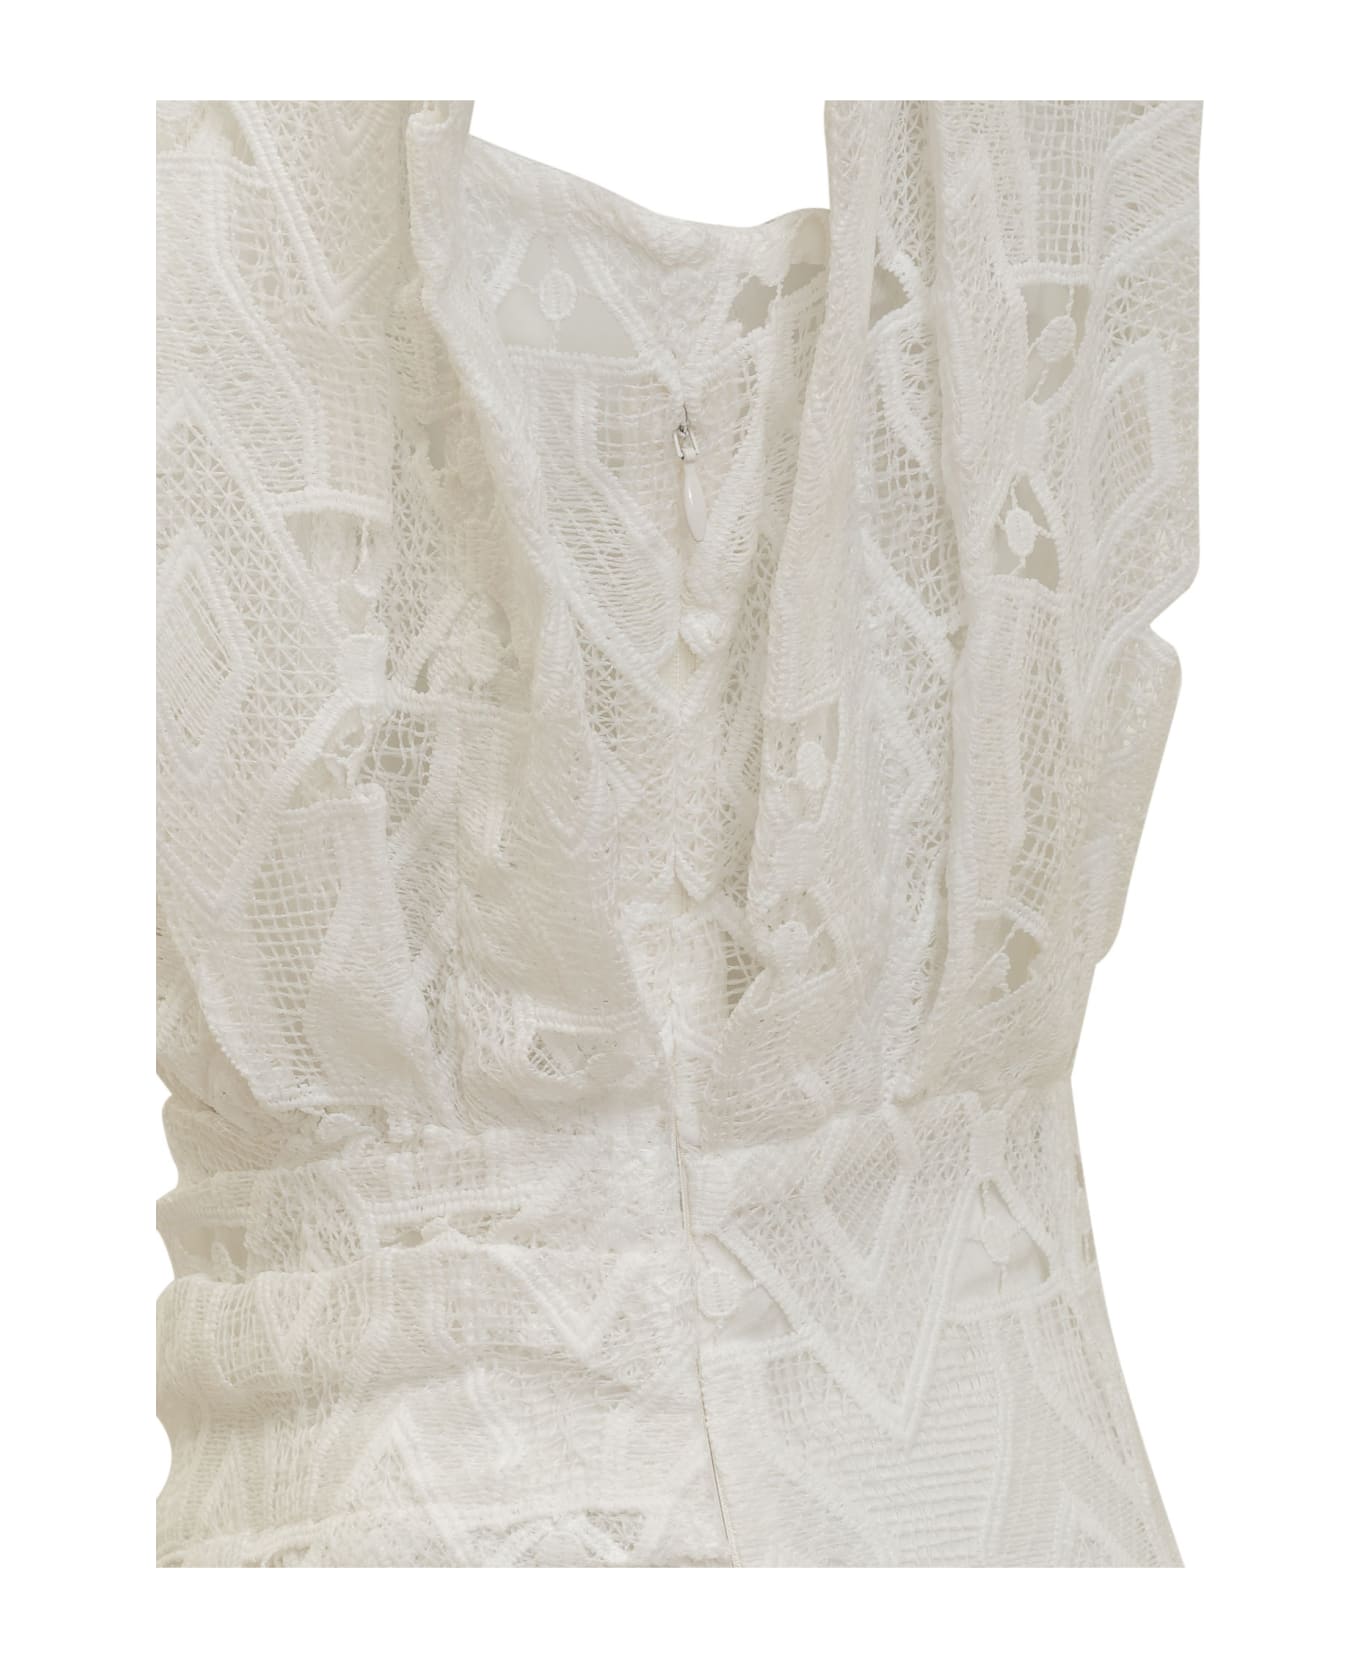 IRO Perine Dress - WHITE